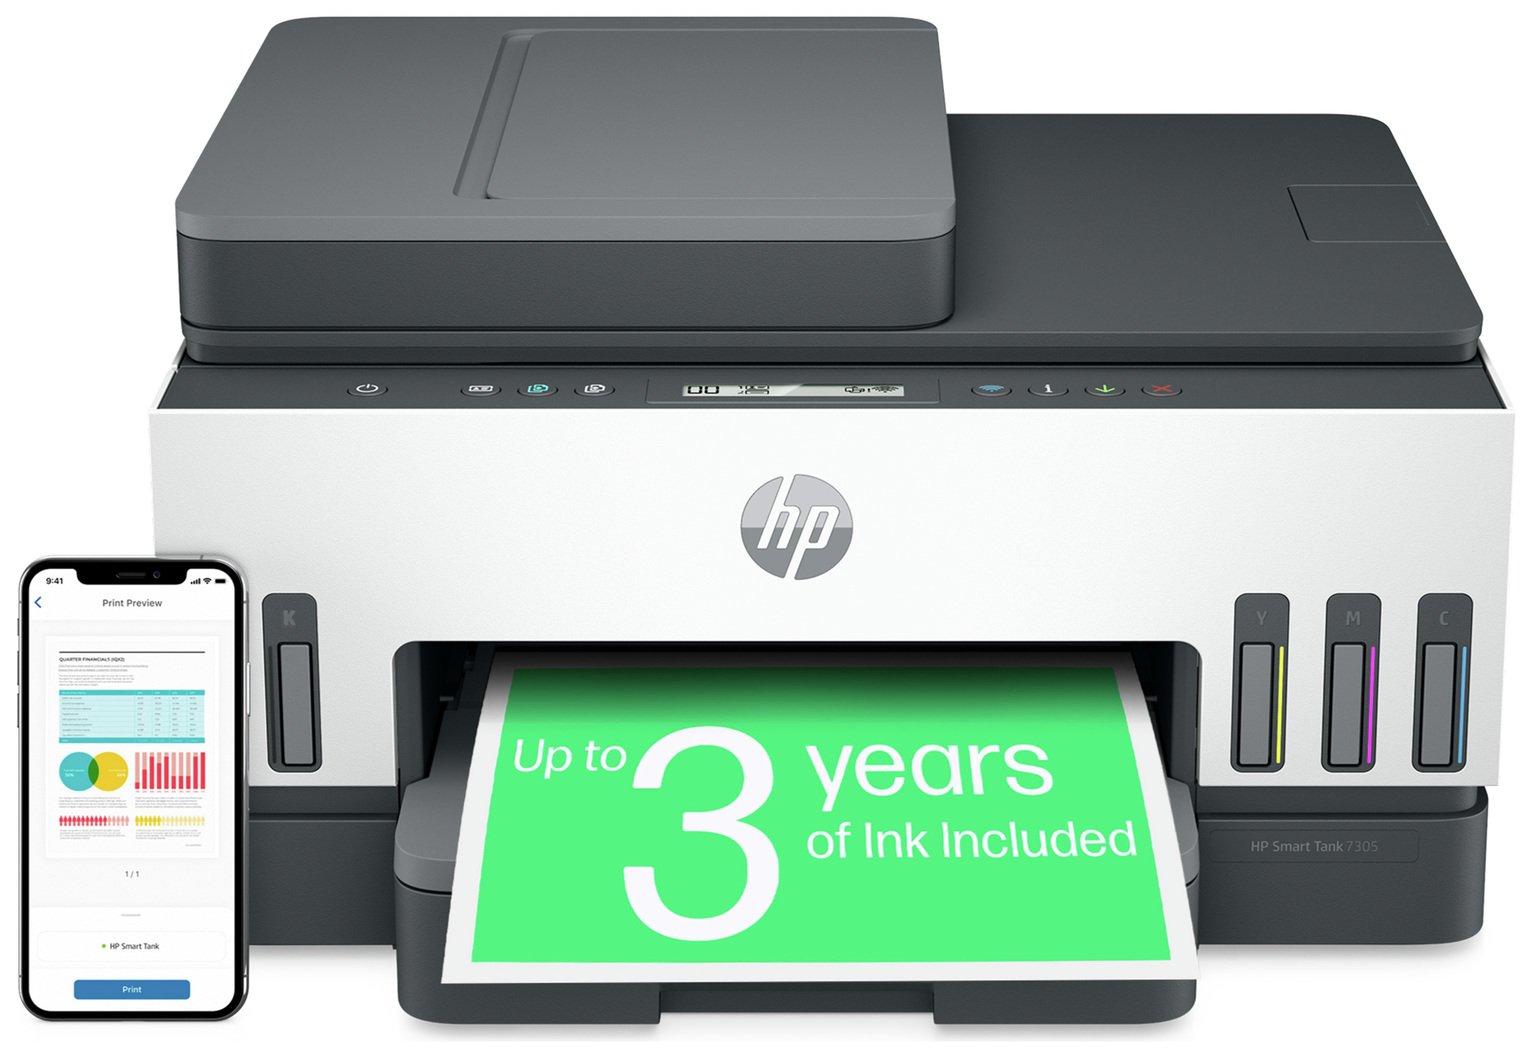 HP SmartTank 7305 All-in-One Wireless Inkjet Printer